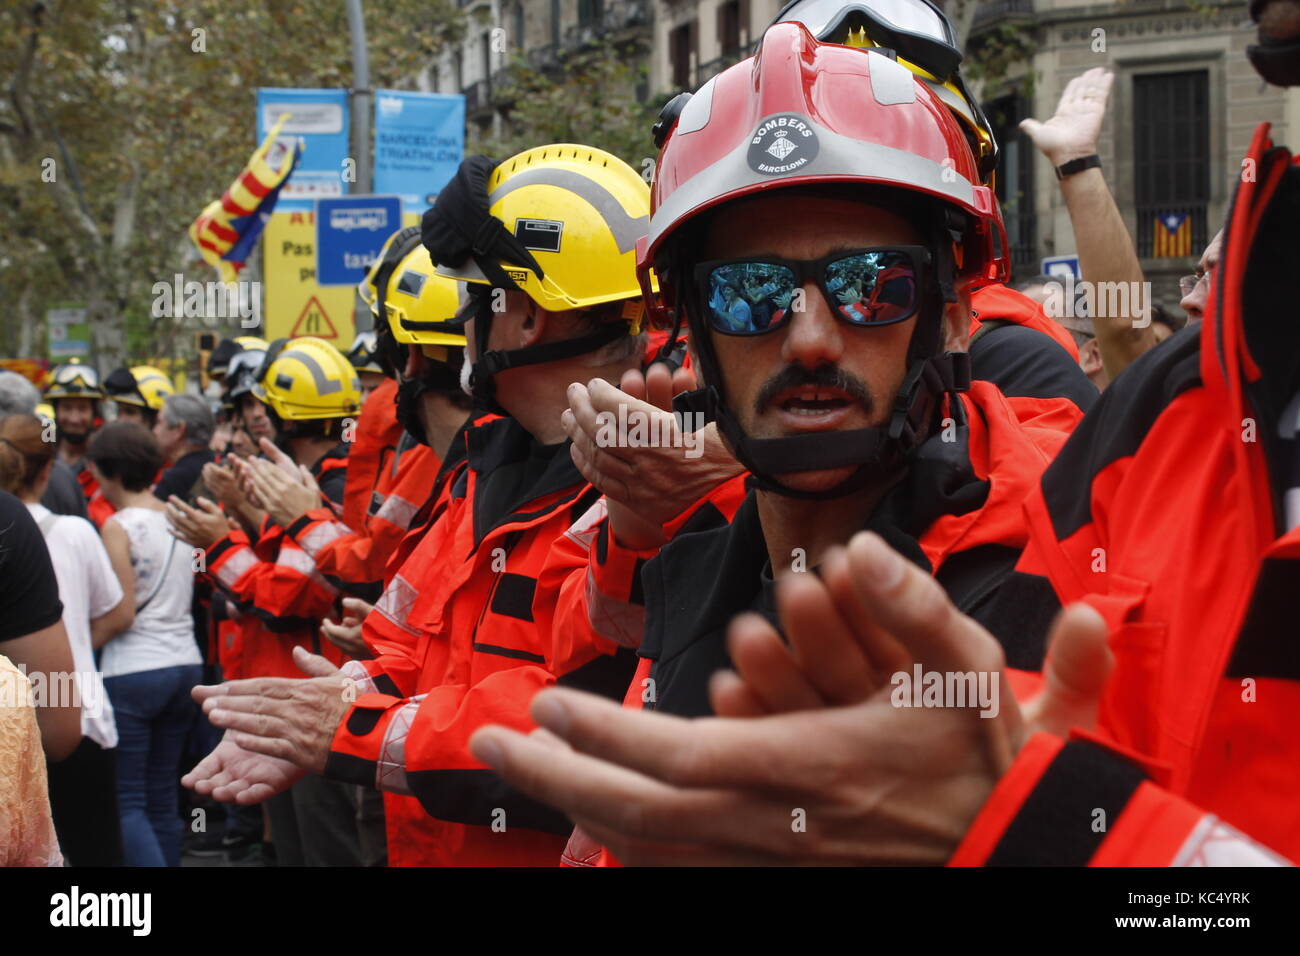 Los bomberos de Barcelona asisten a la protesta junto con la sociedad civil. ´s después de la violencia policial durante el referéndum de Cataluña. Foto de stock